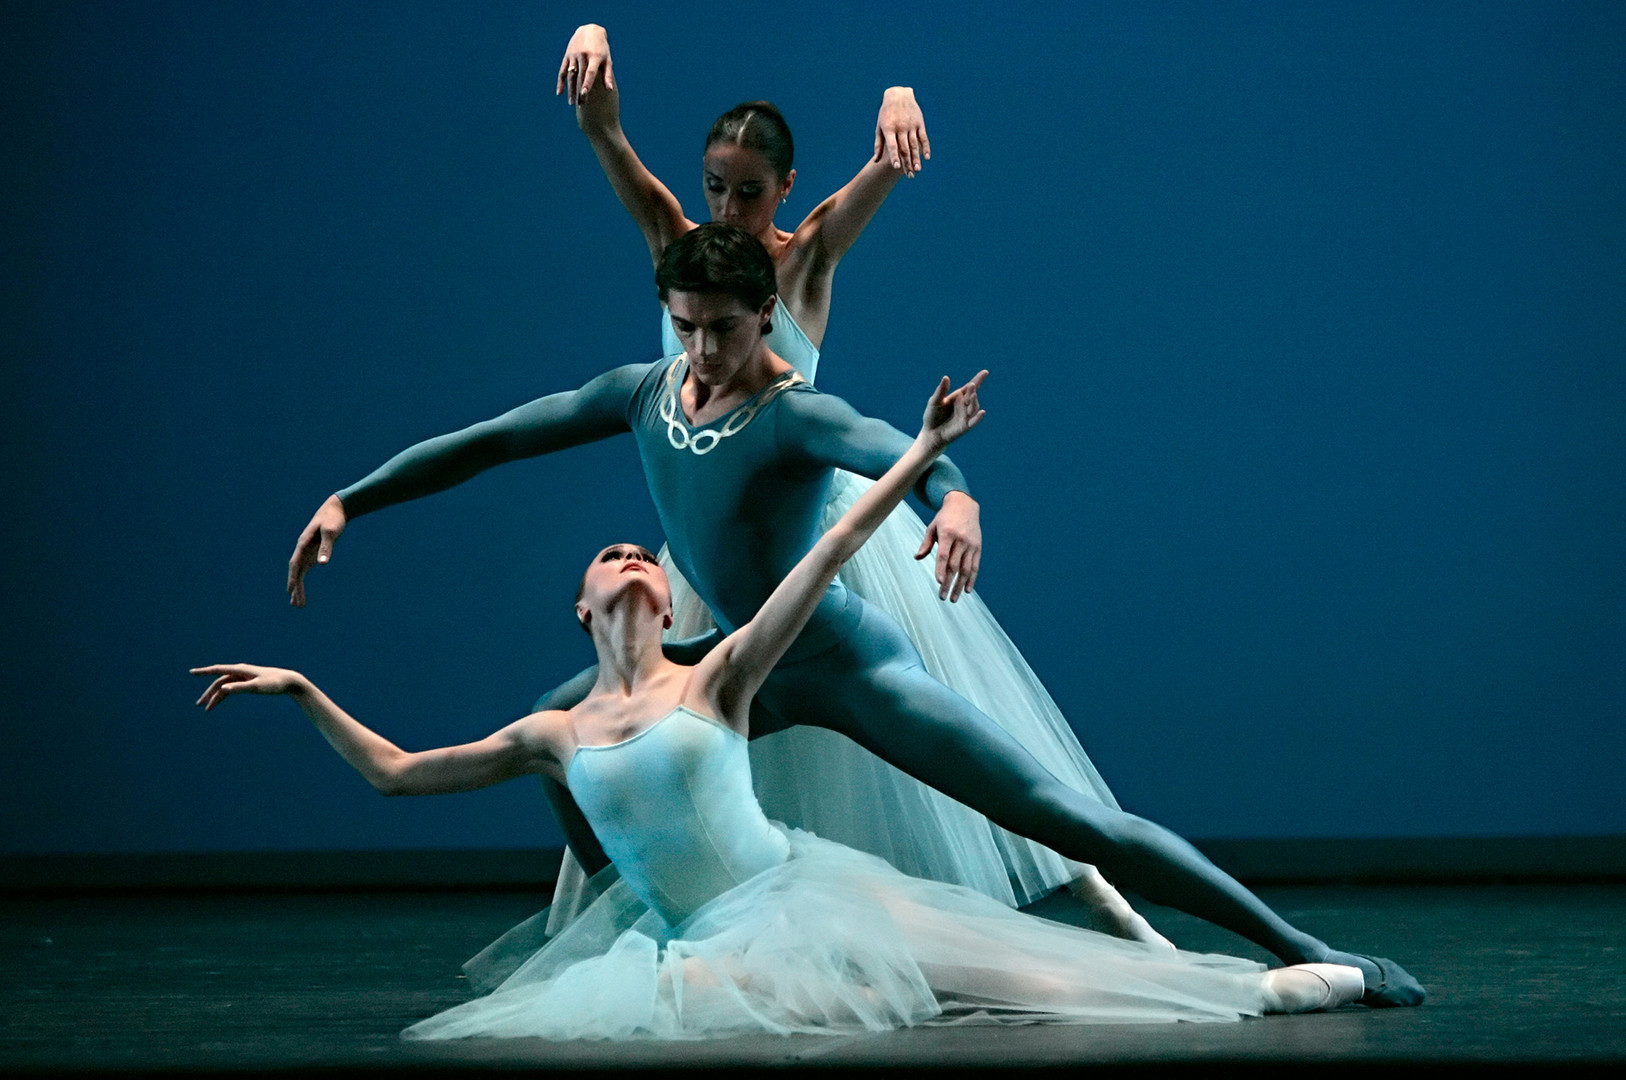 Il balletto in un solo atto “Serenade”, coreografia di George Balanchine, al Teatro Bolshoj di Mosca, febbraio 2017